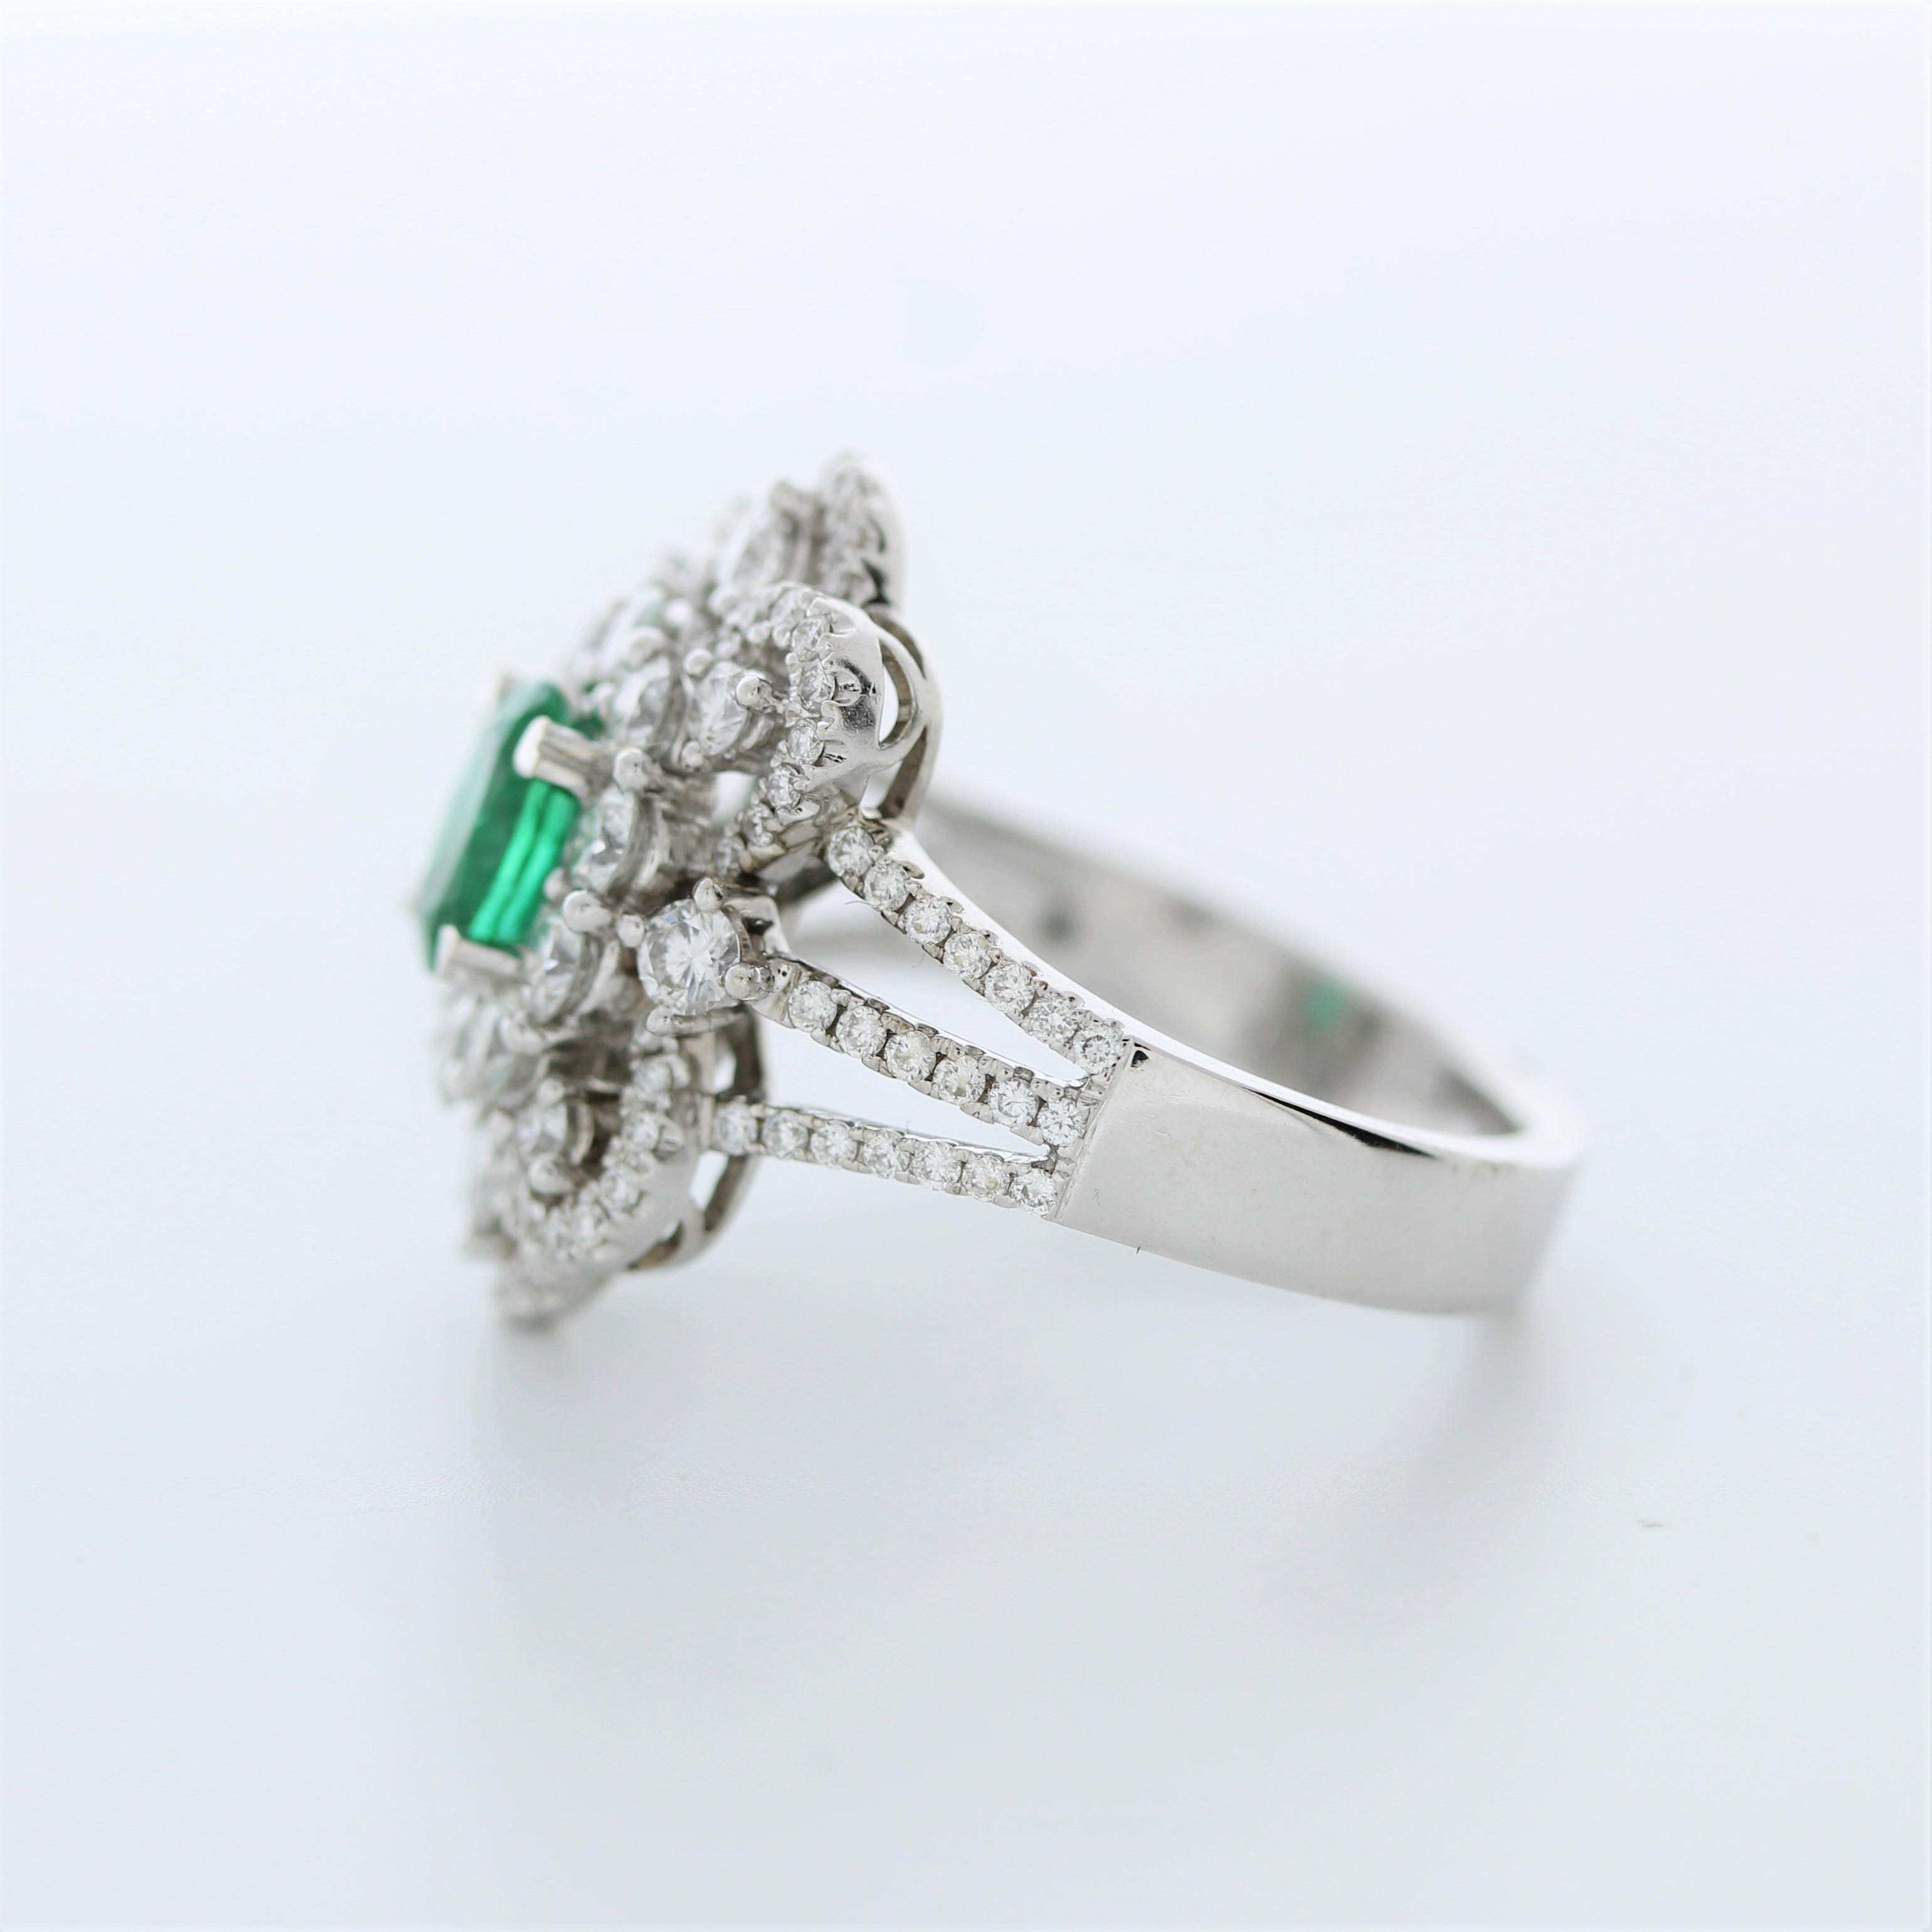 Round Cut 1.10 Carat Weight Emerald Gemstone & Round Fashion Diamond In 14K White Gold For Sale